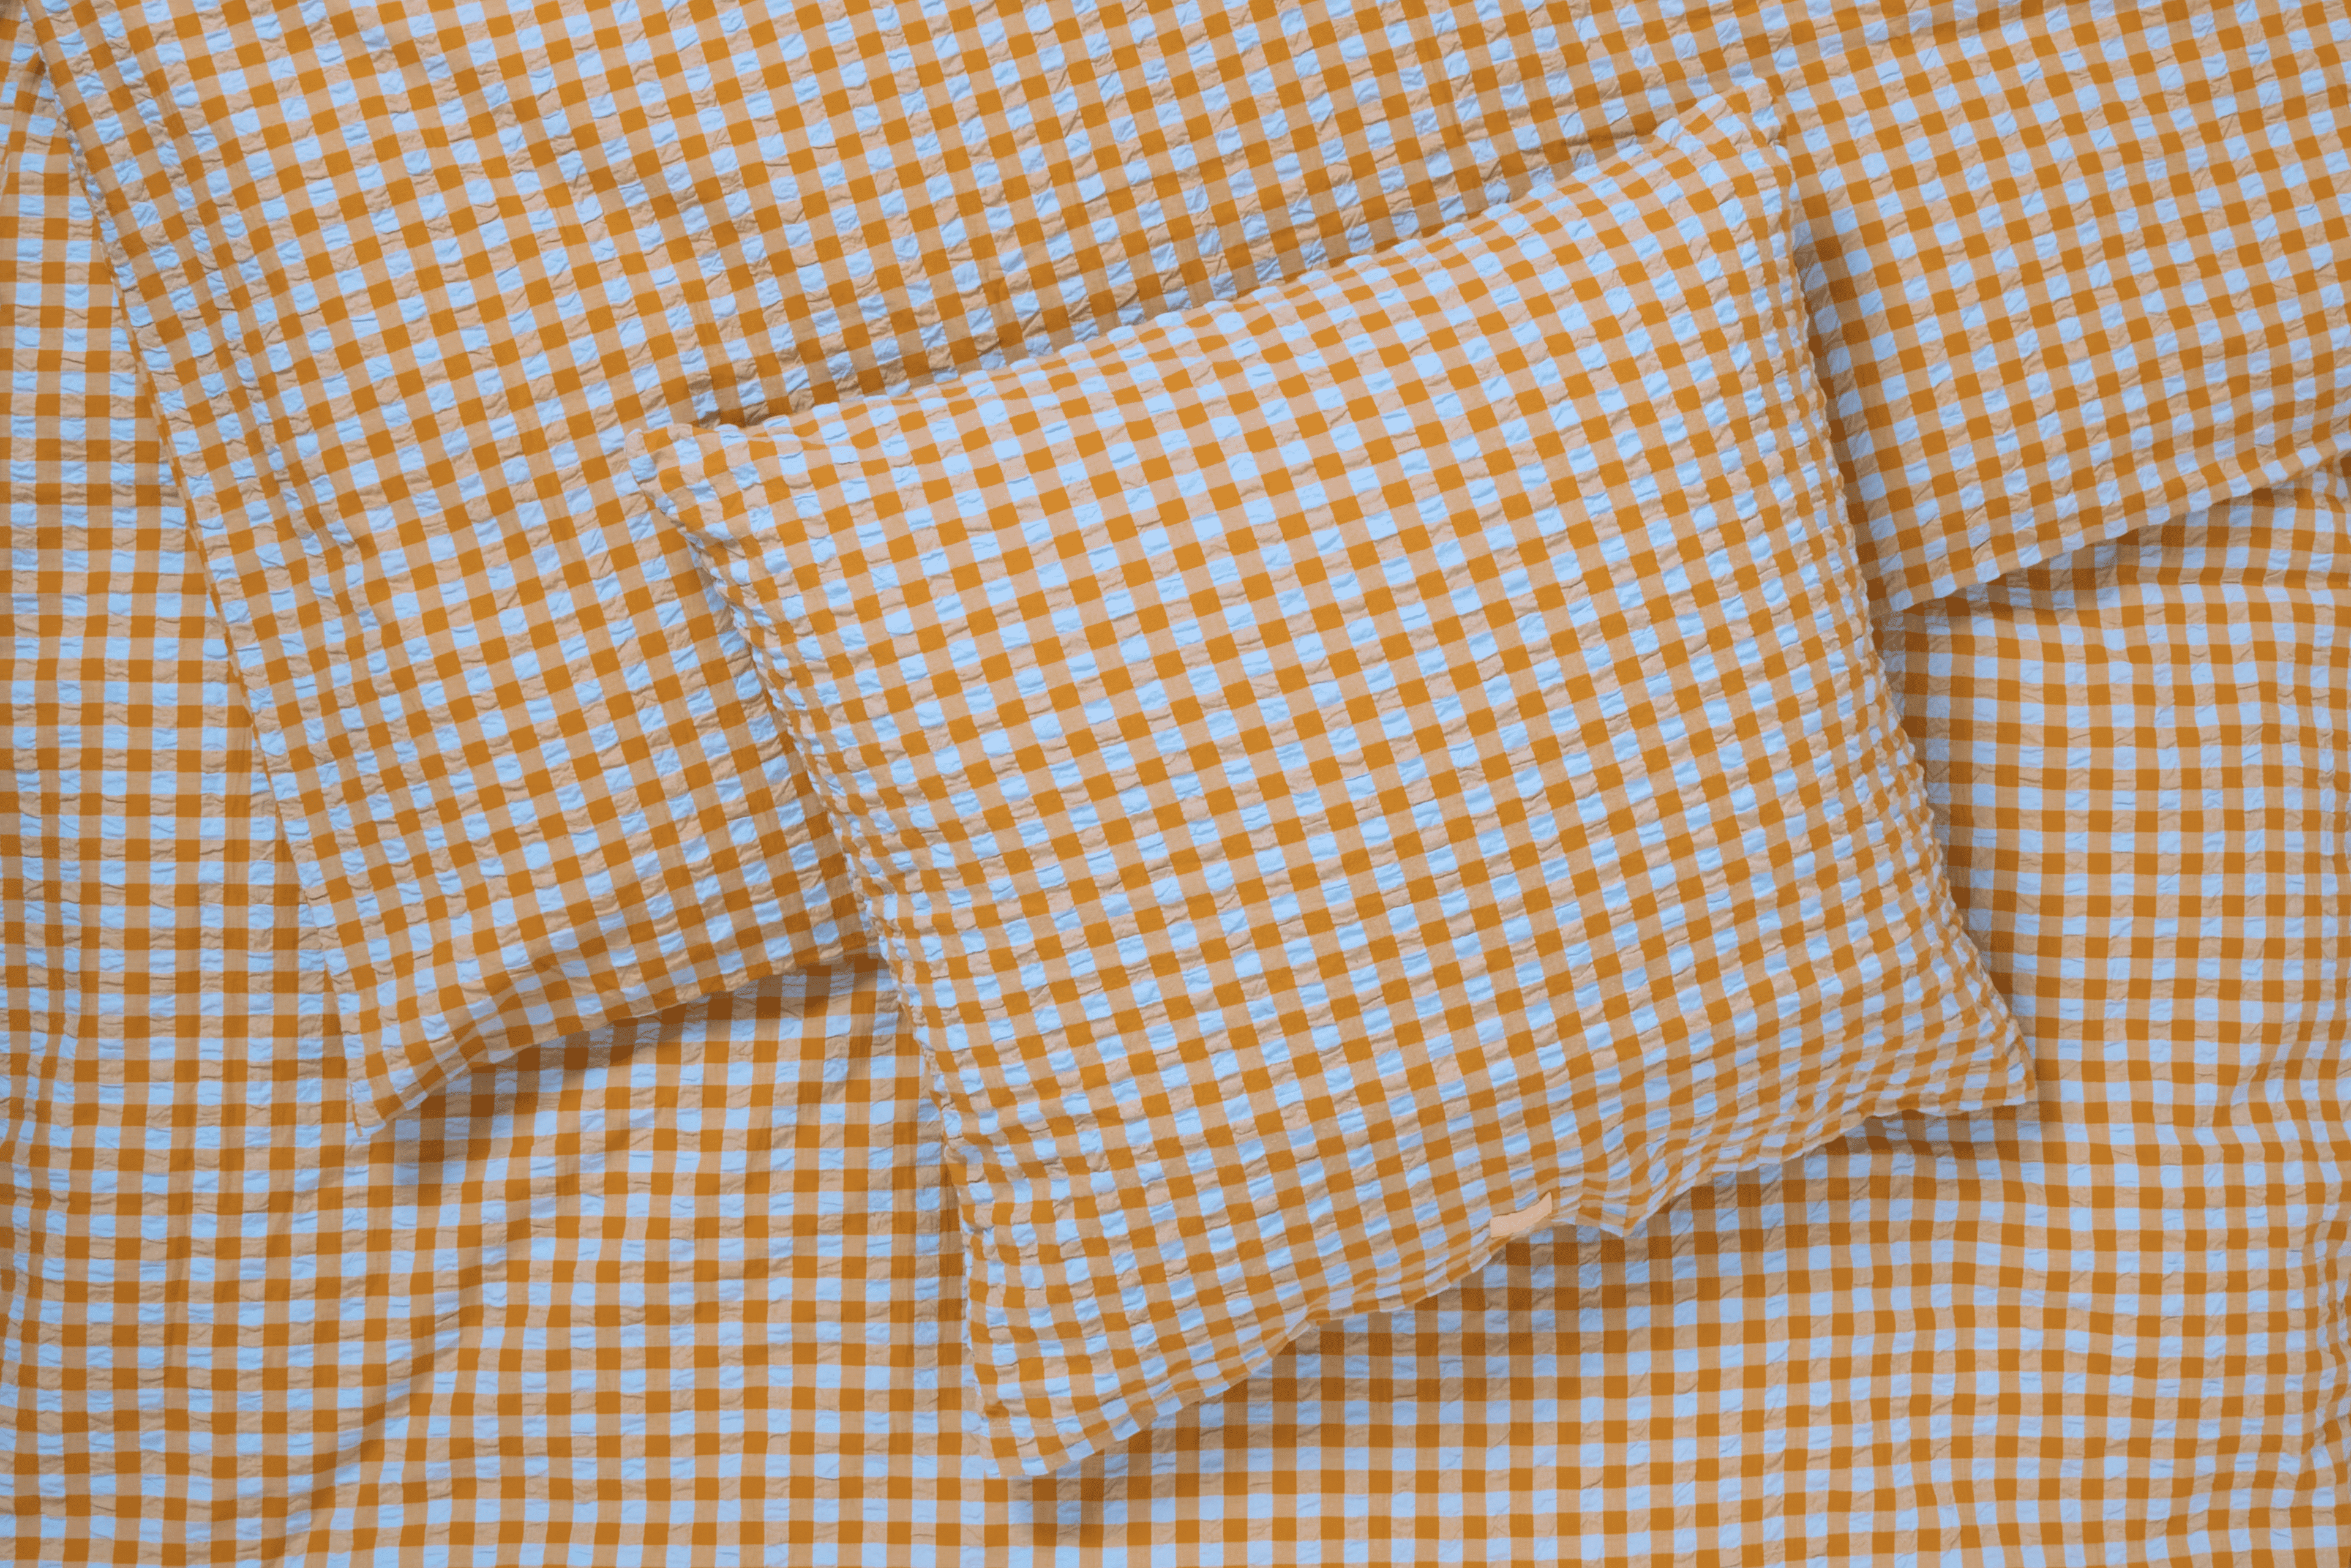 Bed linen 150x210 cm